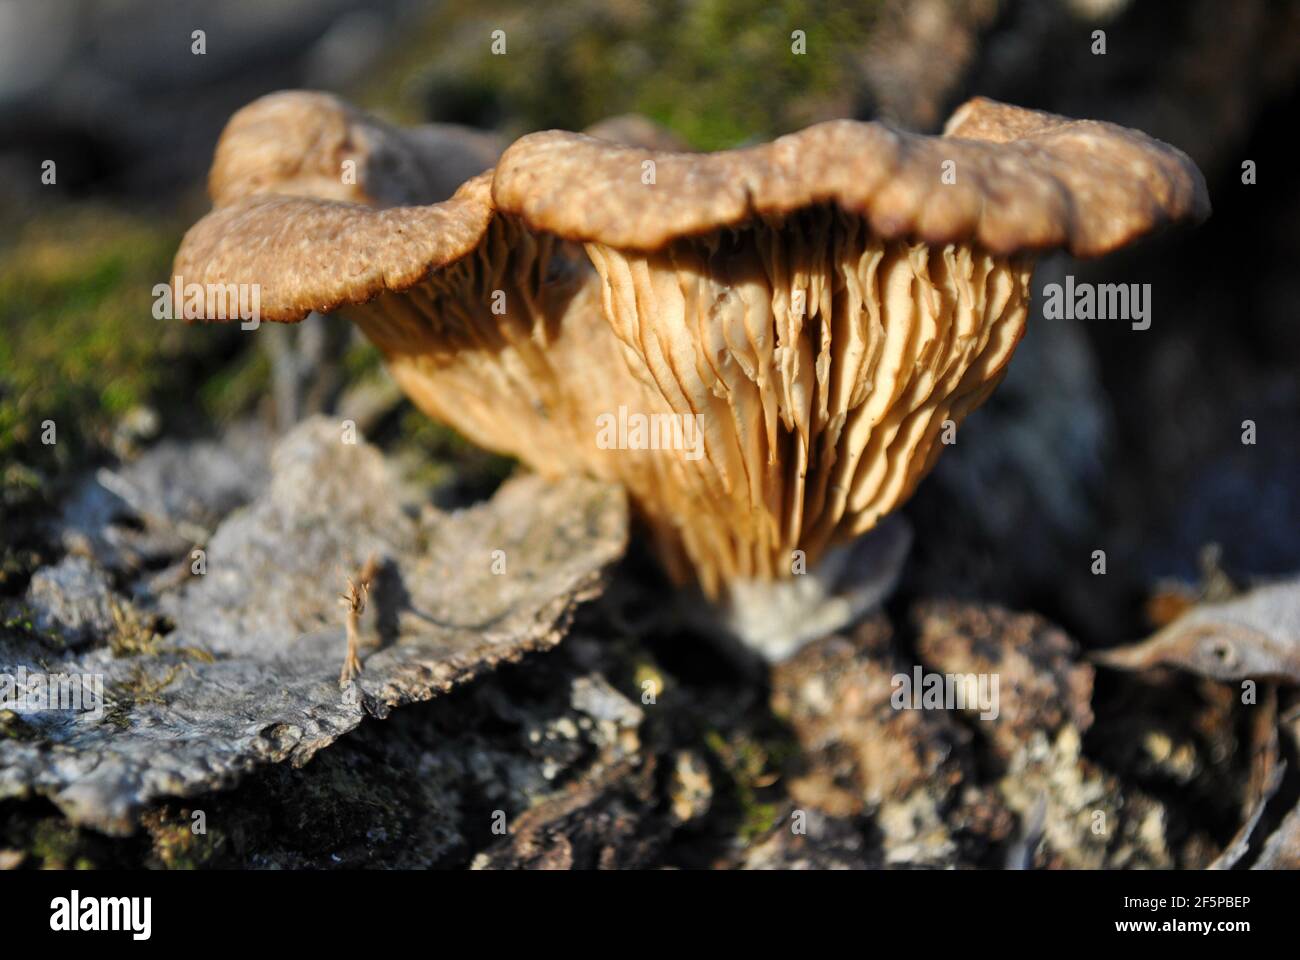 Omphalotus olearius (Jack-o'-lanterne champignon) champignon poussant sur le tronc de l'arbre, gros plan détail vue latérale Banque D'Images